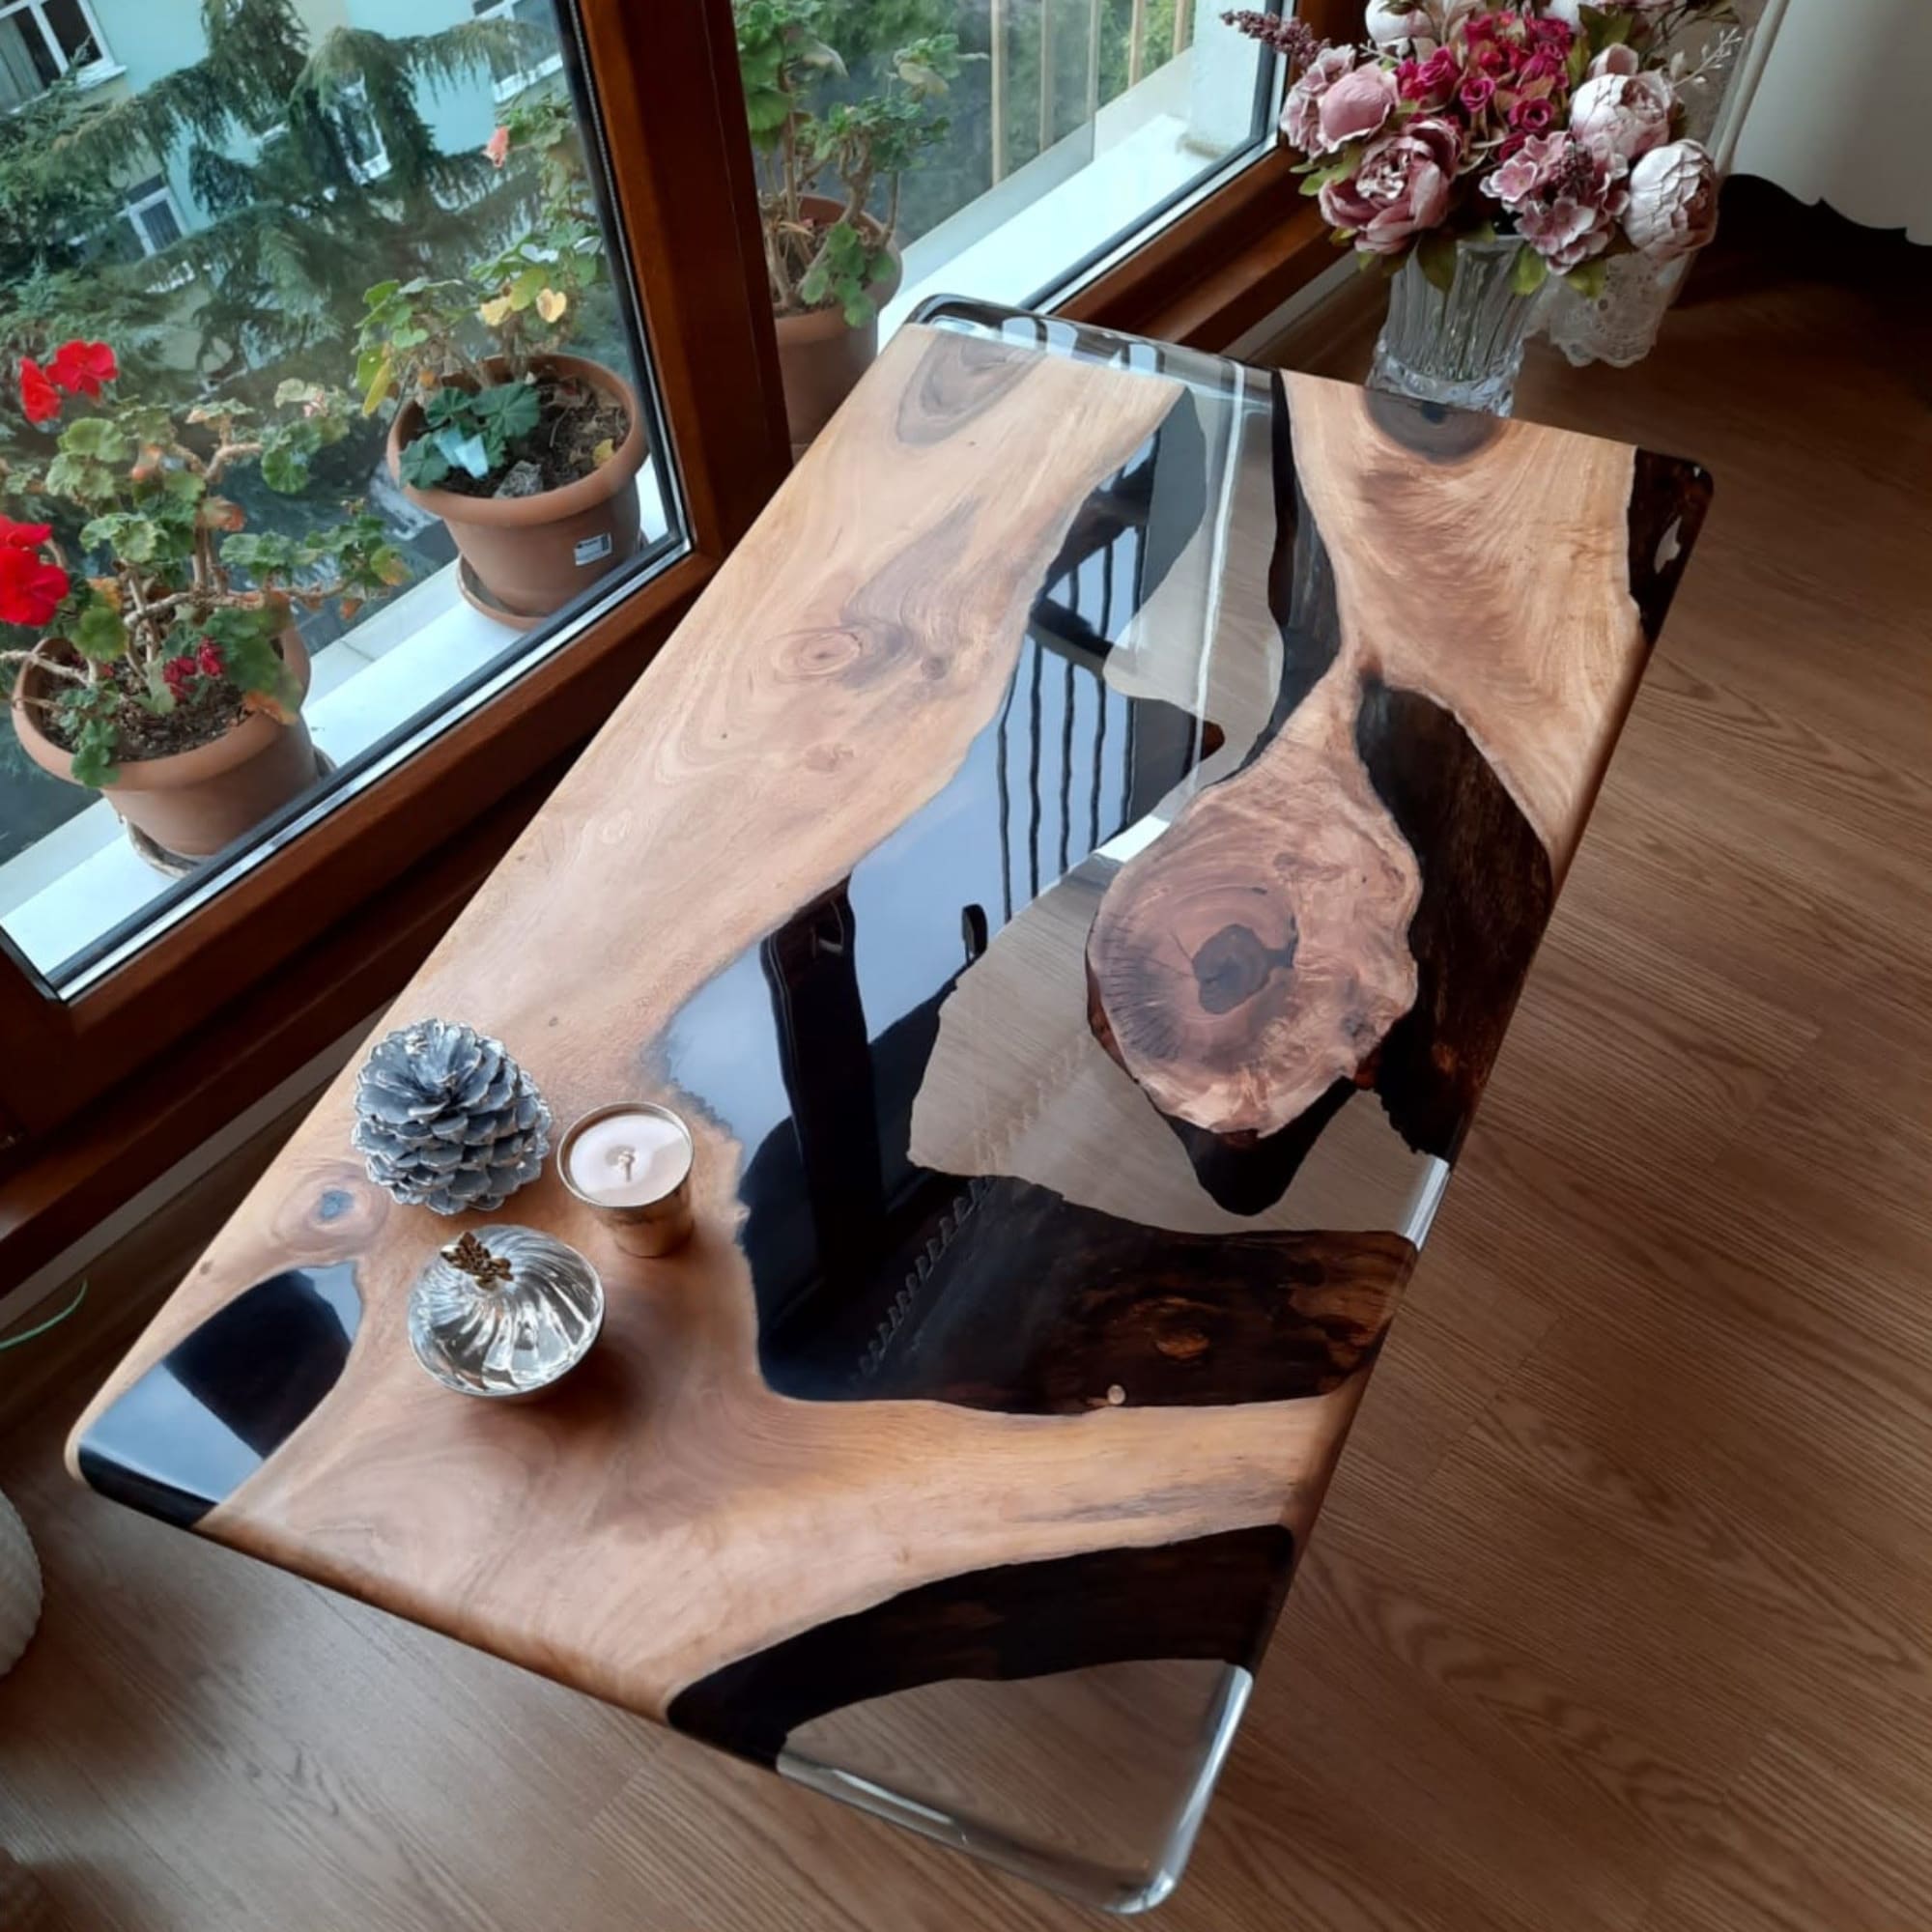 Solid Hardwood and Epoxy Coffee Table